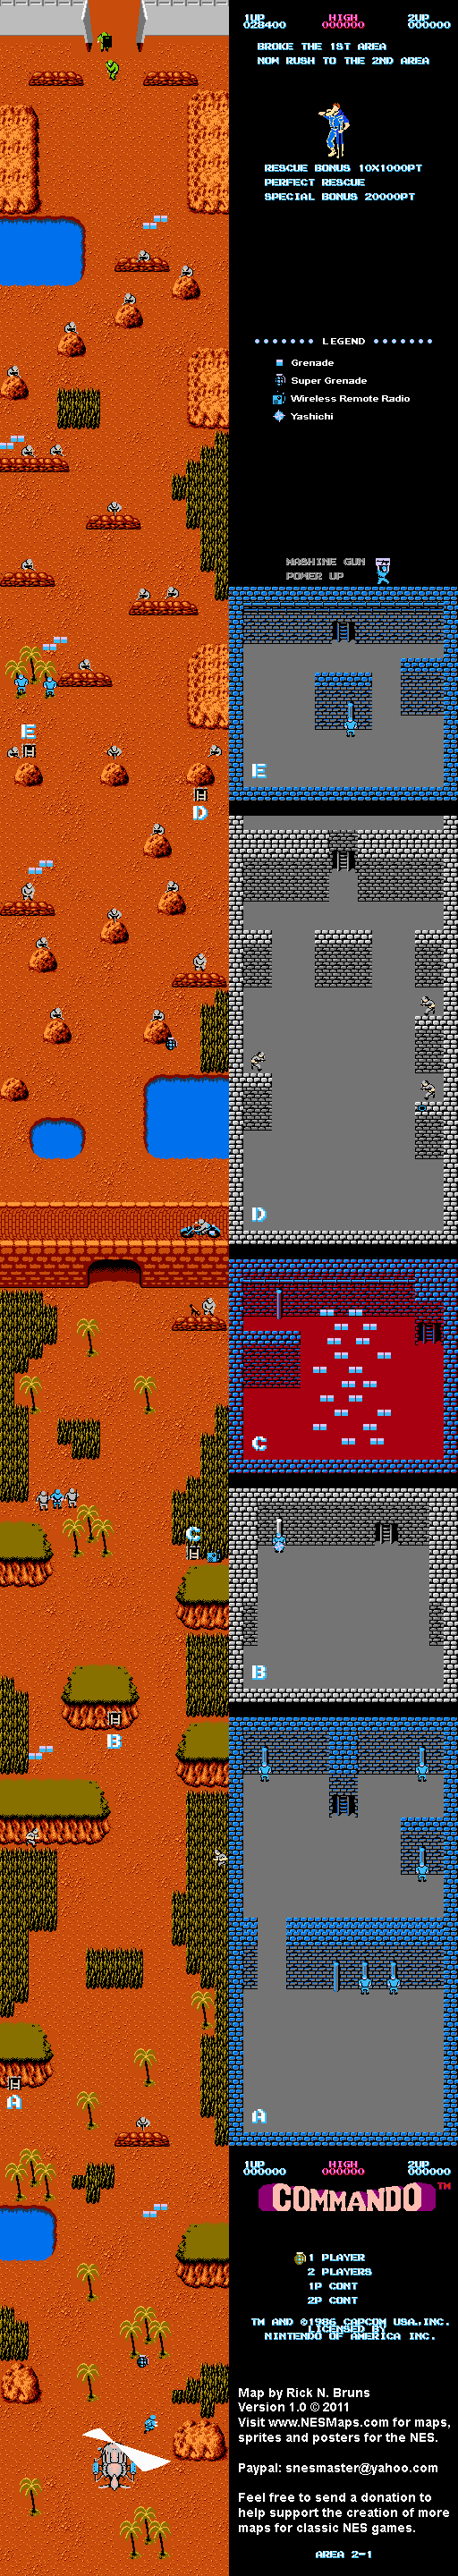 Commando - Area 2-1 - Nintendo NES Map